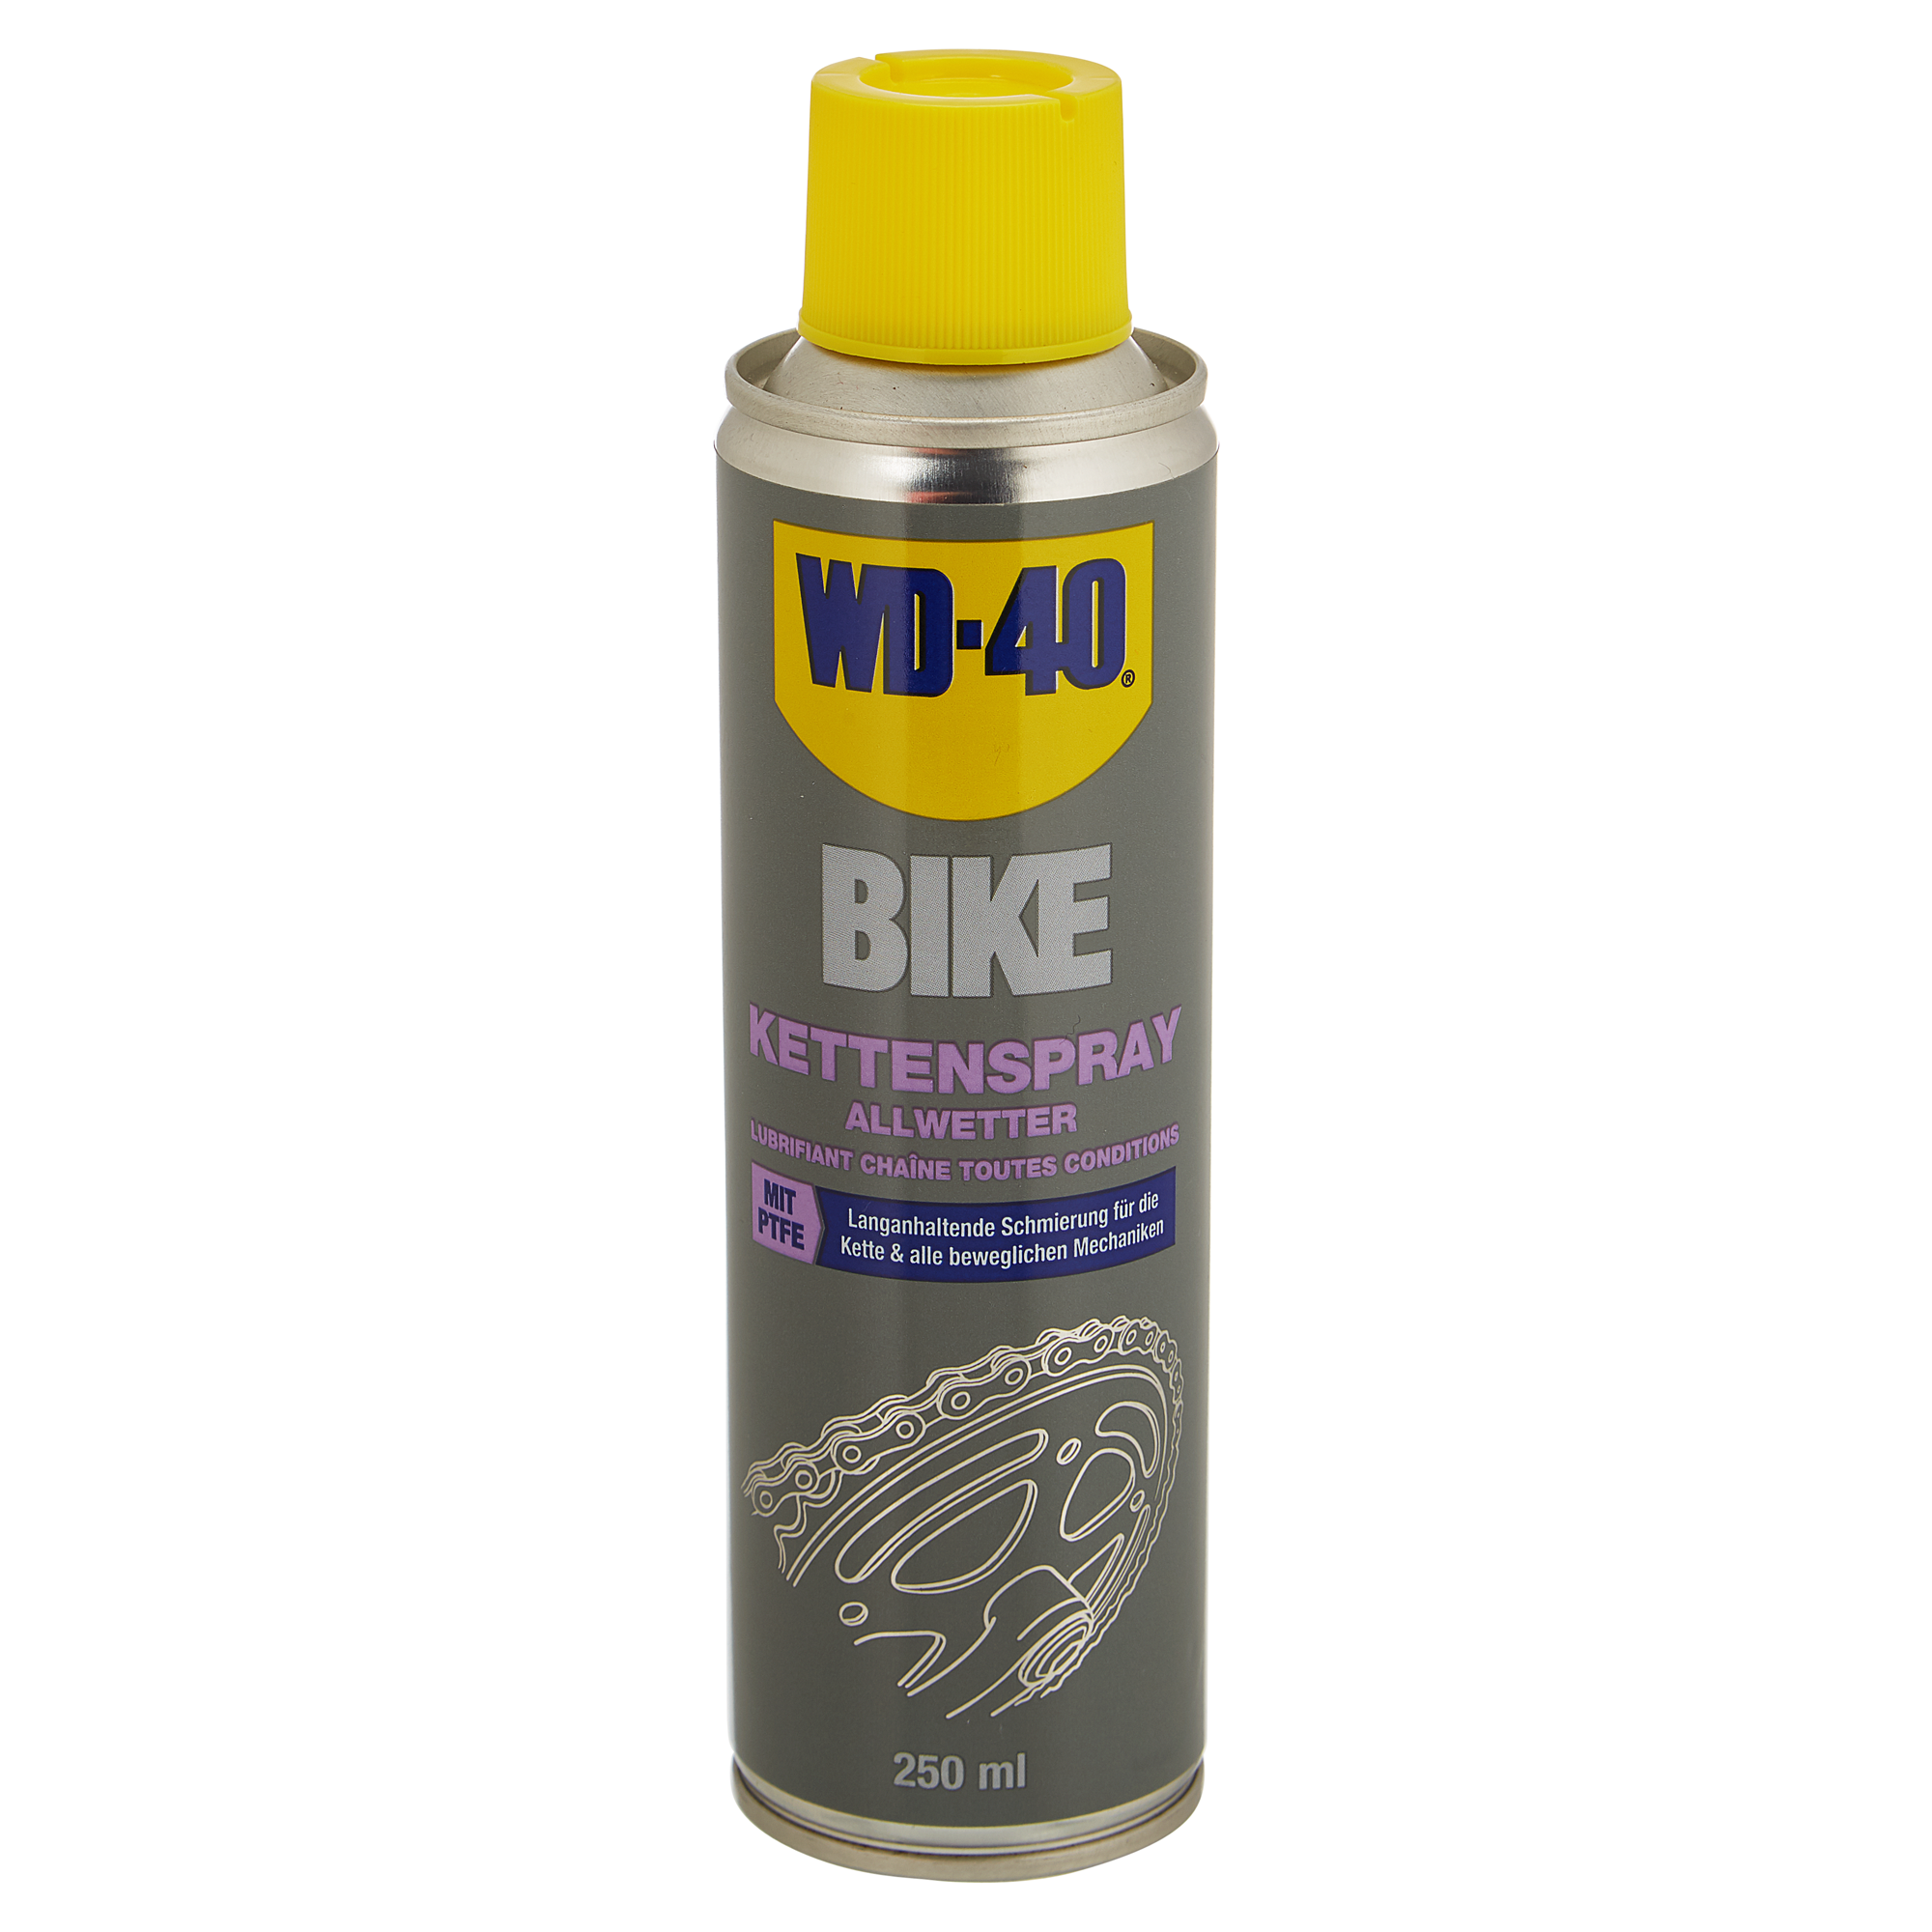 Kettenspray Bike Allwetter mit PTFE 250 ml